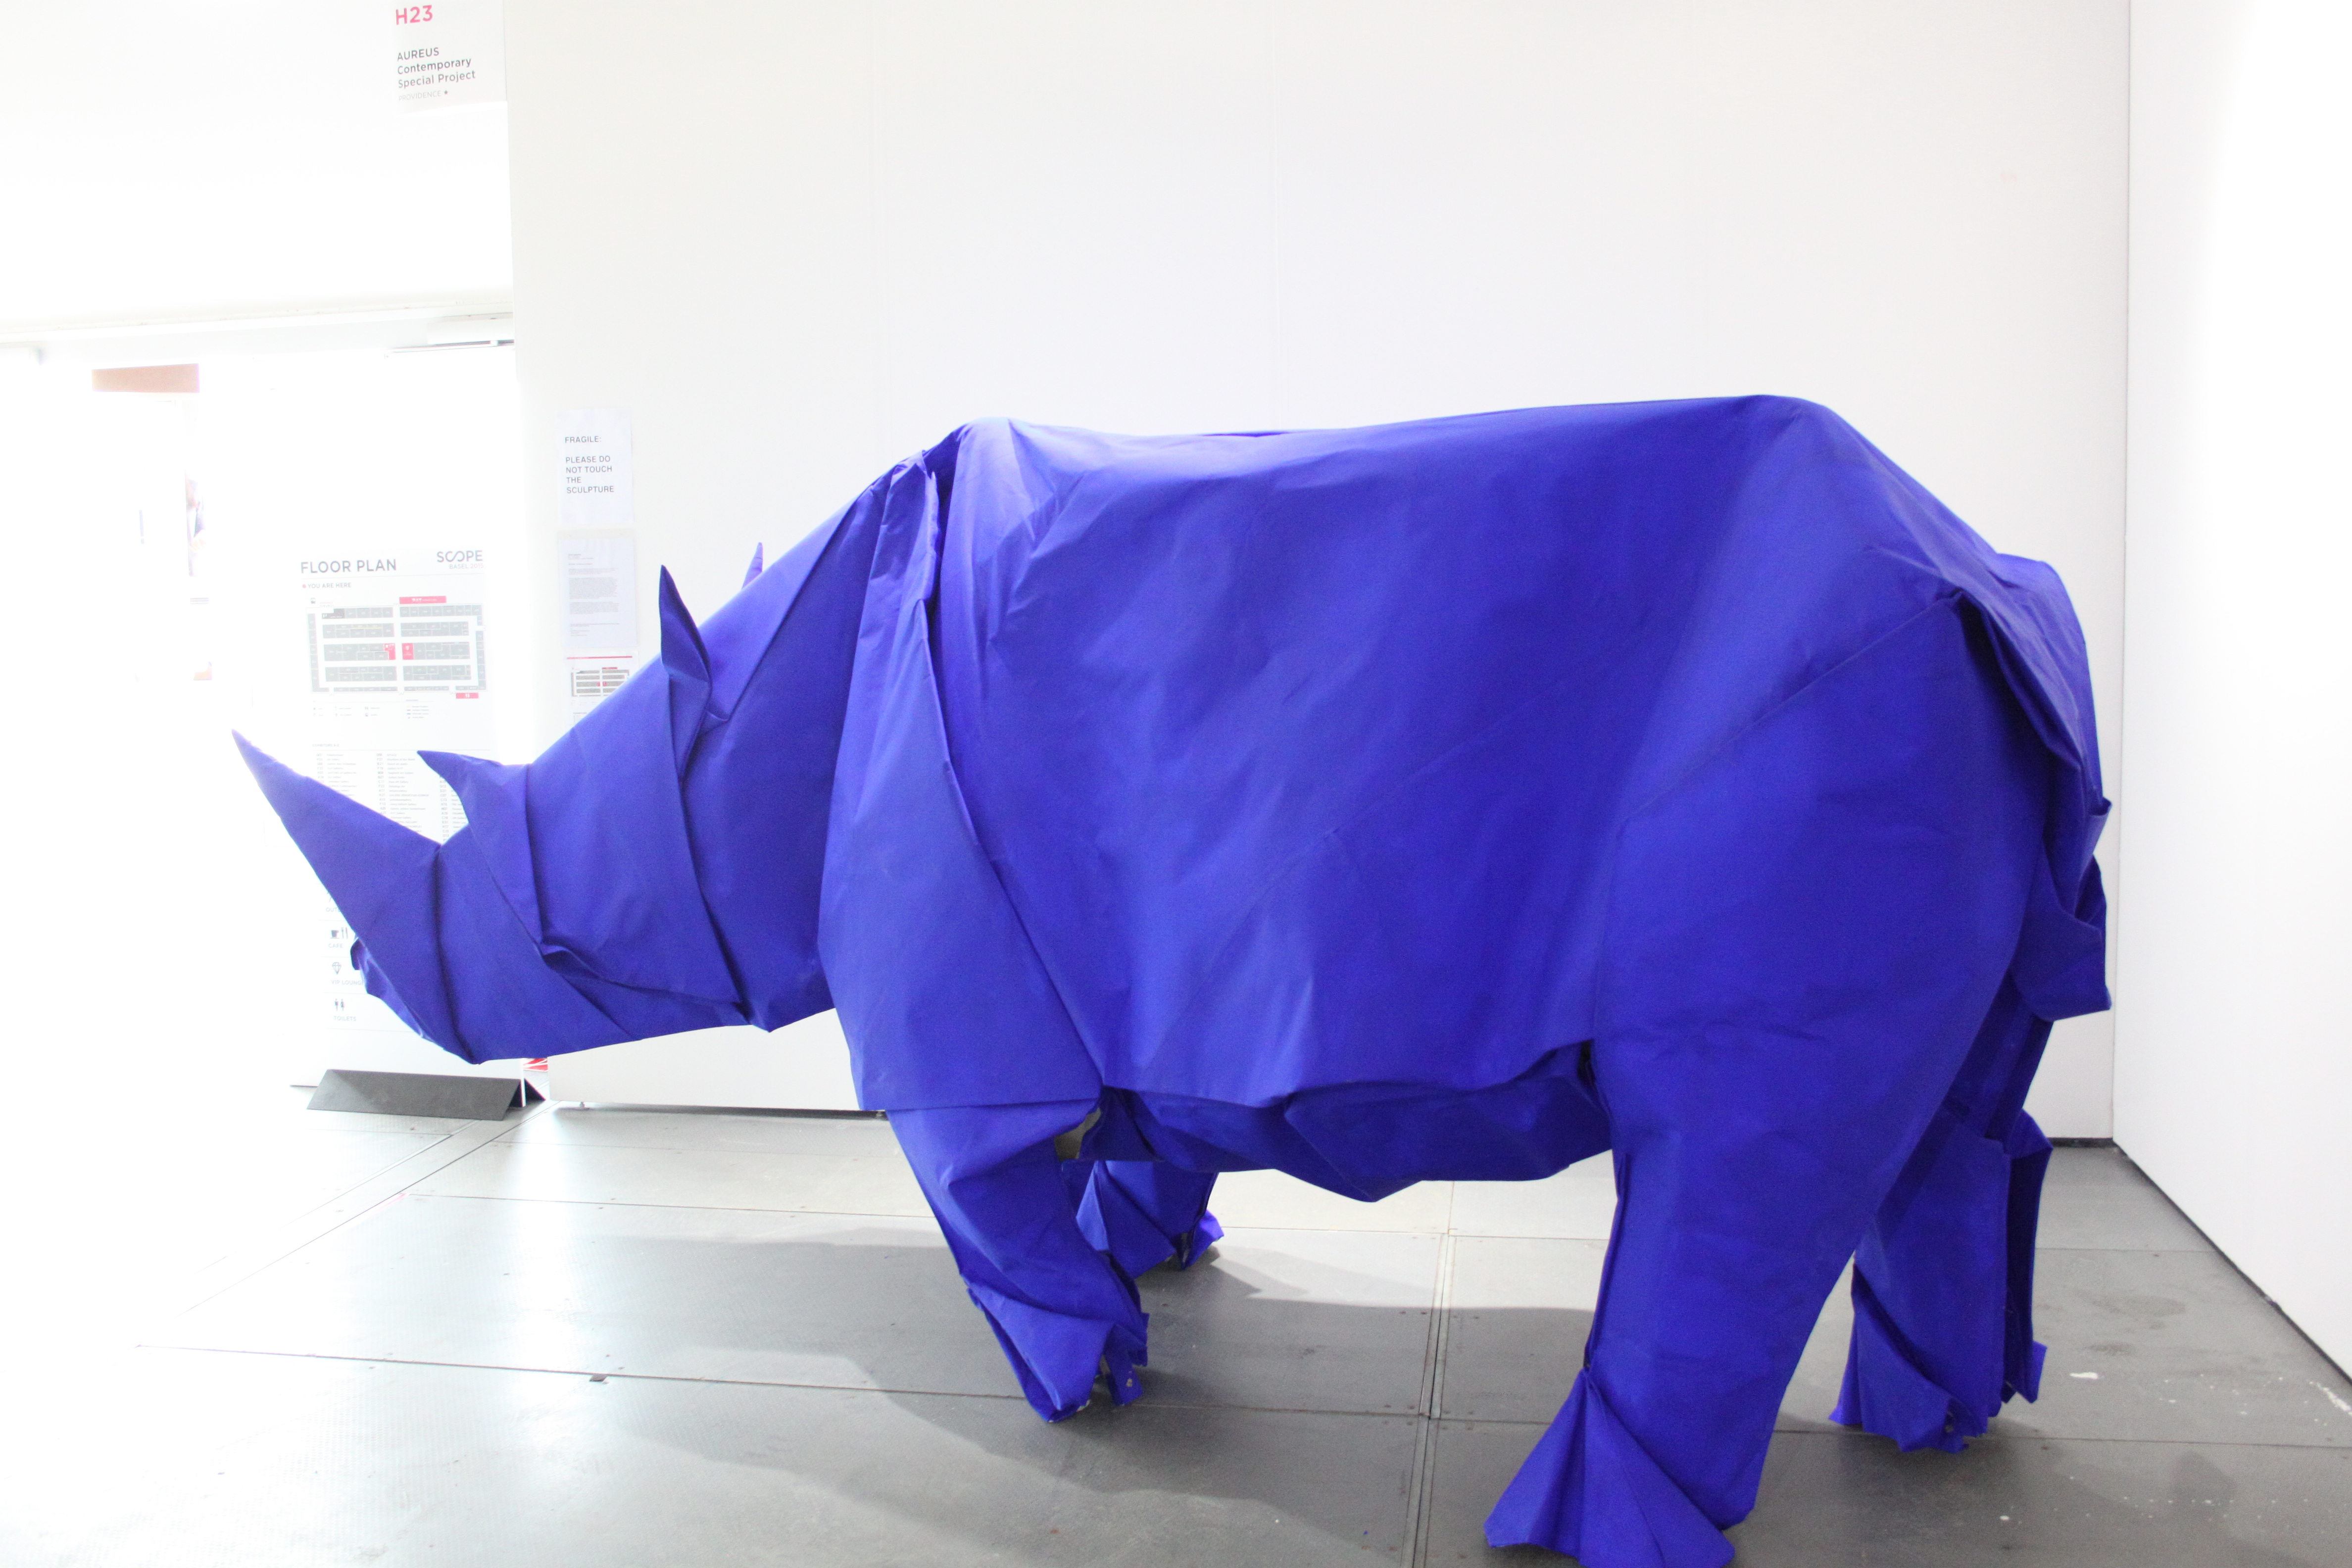 Dieses Rhinozeros besteht komplett aus Papier. Origamiarbeit von Shipo Mabona aus Luzern.